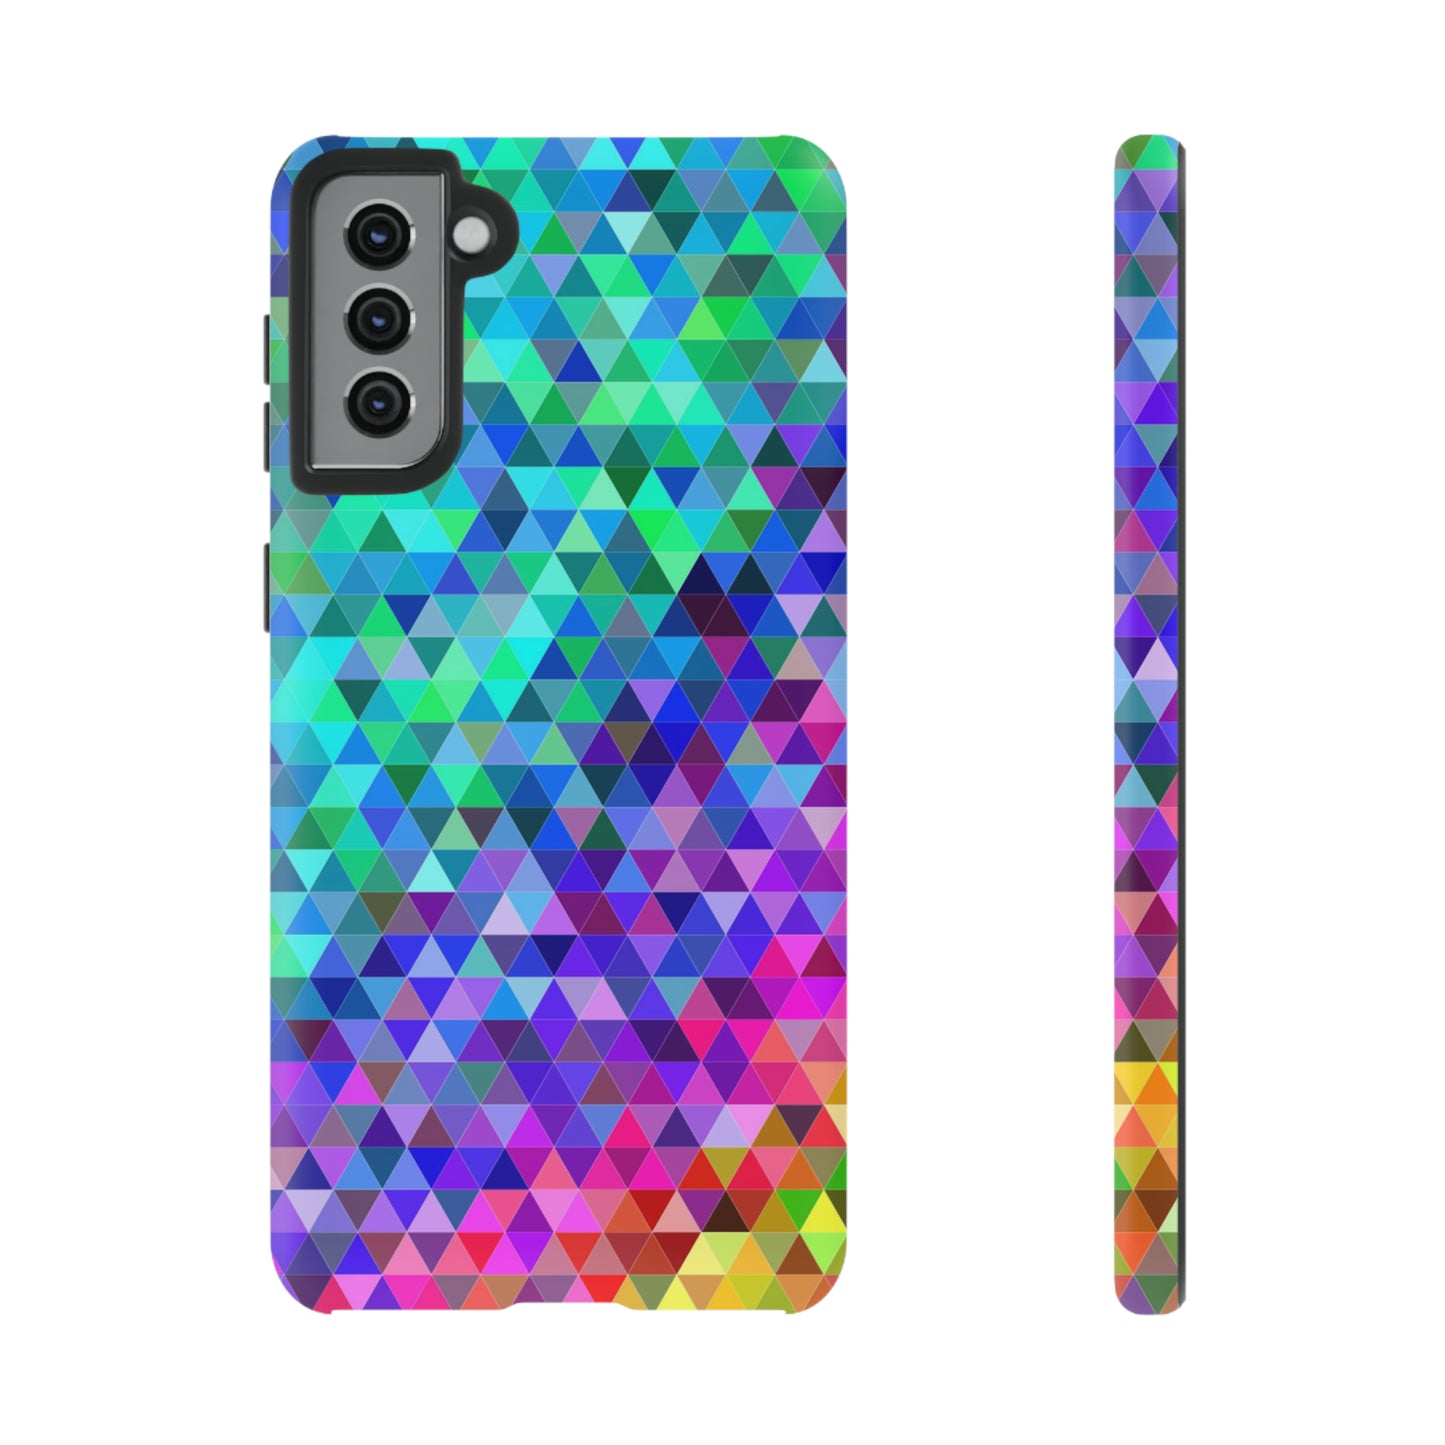 Mosaic pixel color Samsung case